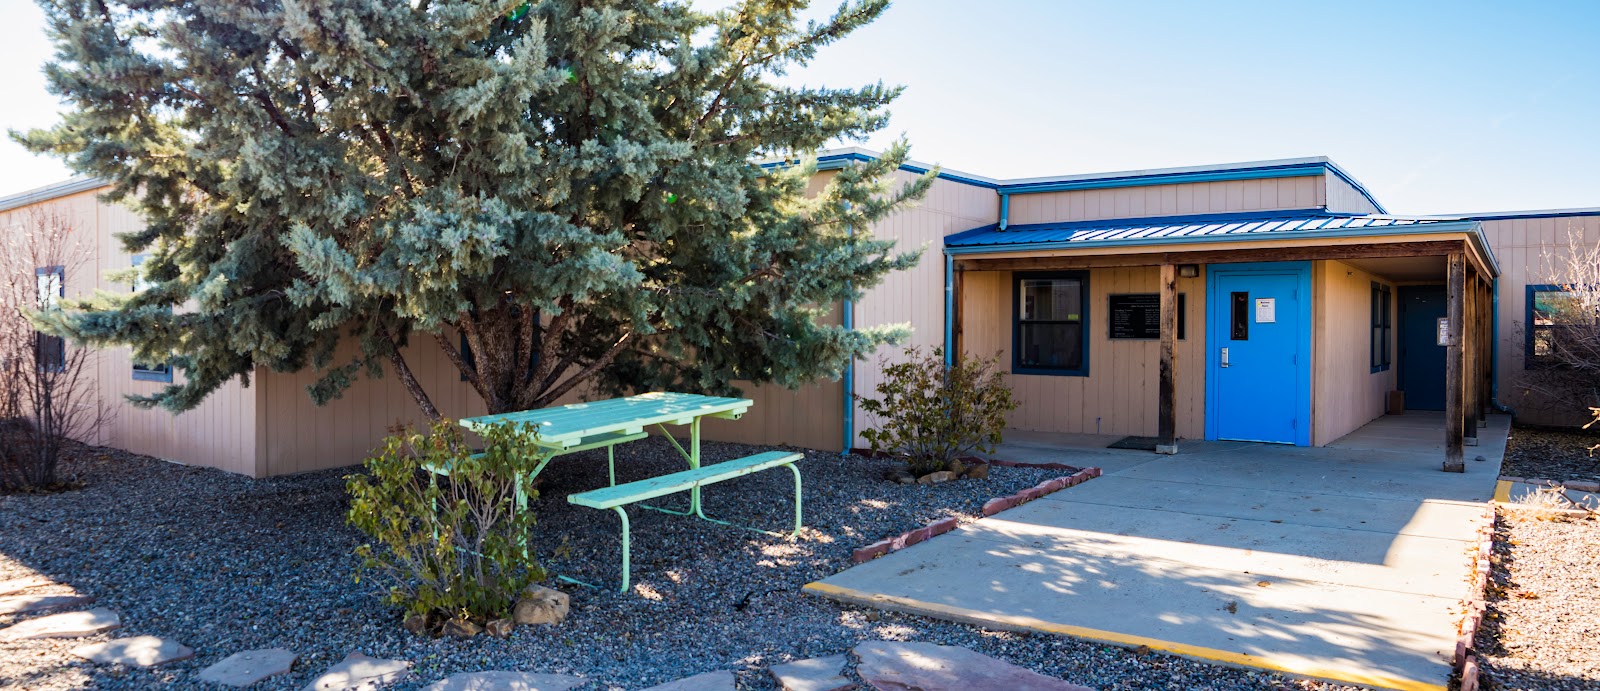 Alamo Navajo School Board - Alamo Navajo Behavorial Health Clinic